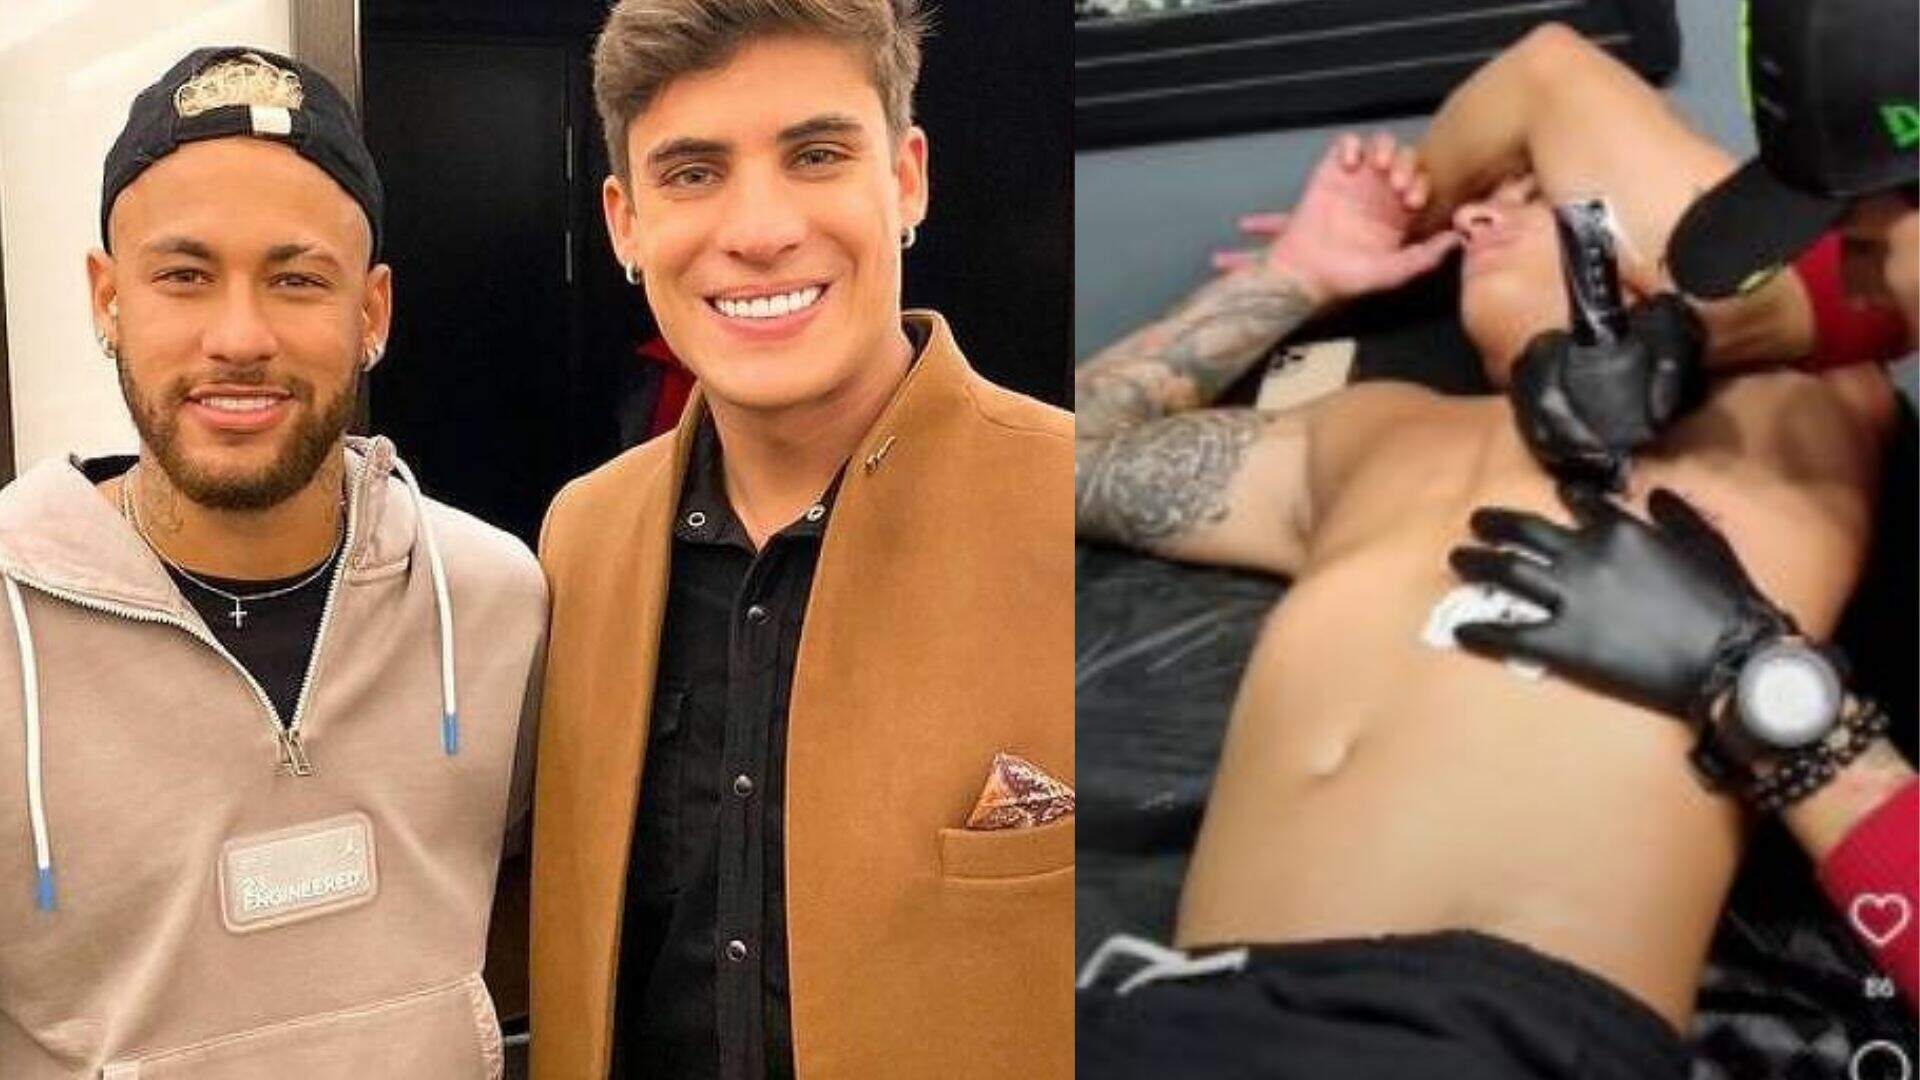 Eternizou! Ex-padrasto de Neymar faz tatuagem e envolve mãe do atleta em desenho inesperado